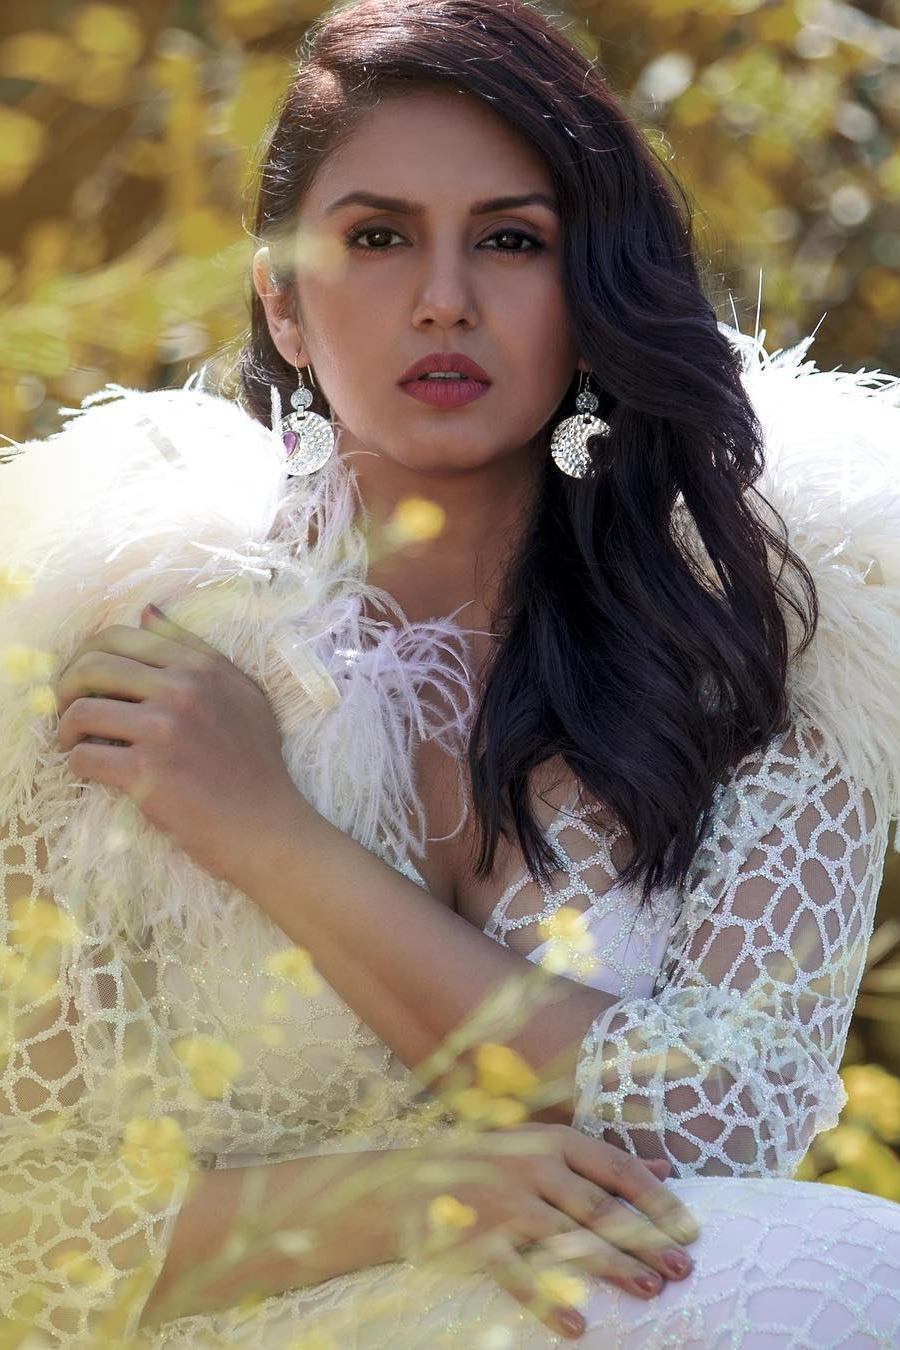 HumaQureshi, Actress, Bollywood